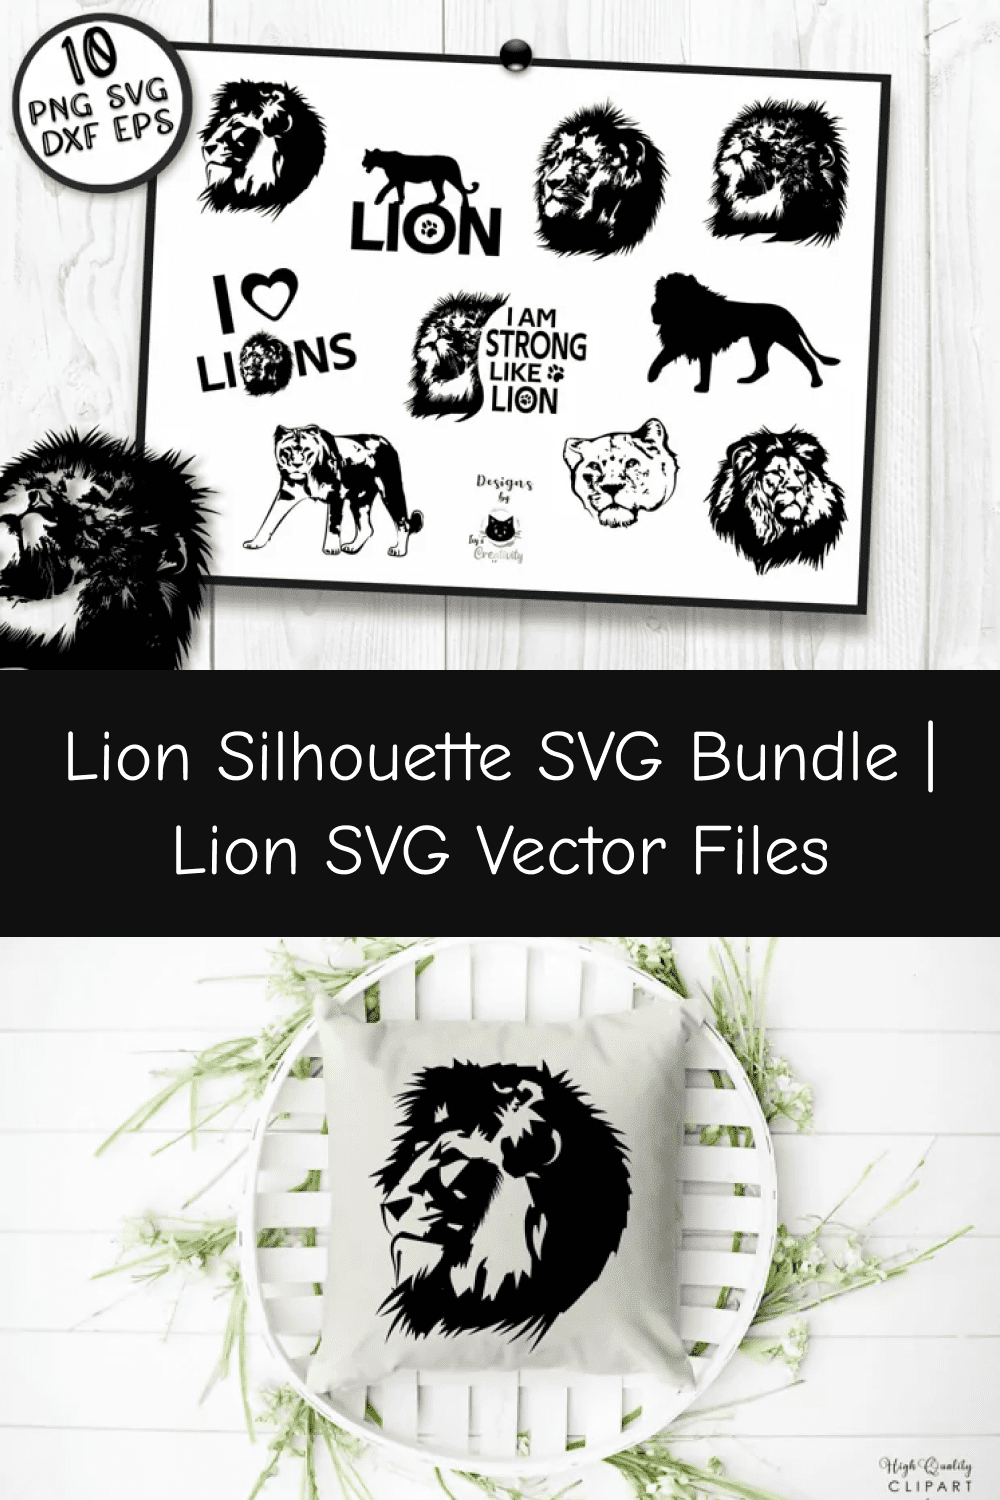 03 lion silhouette svg bundle lion svg vector files pinterest